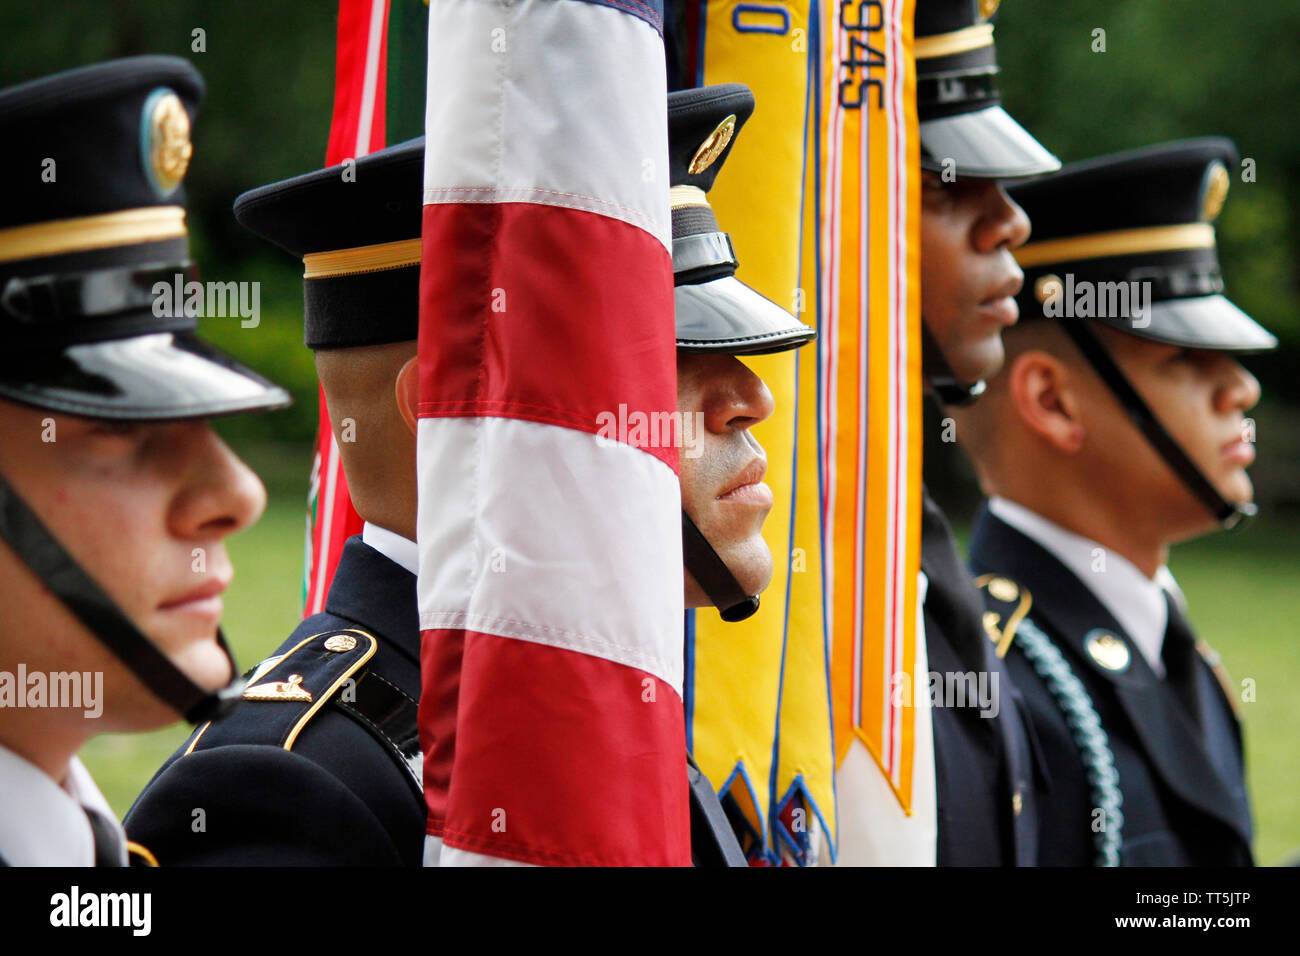 Philadelphia, PA, USA - Junio 14, 2019: los miembros activos de las Fuerzas Armadas de los Estados Unidos, los veteranos y re-enactors históricos conmemorar el Día de la bandera en el centro de la Constitución Nacional, en Filadelfia, Pennsylvania. Crédito: OOgImages/Alamy Live News Foto de stock